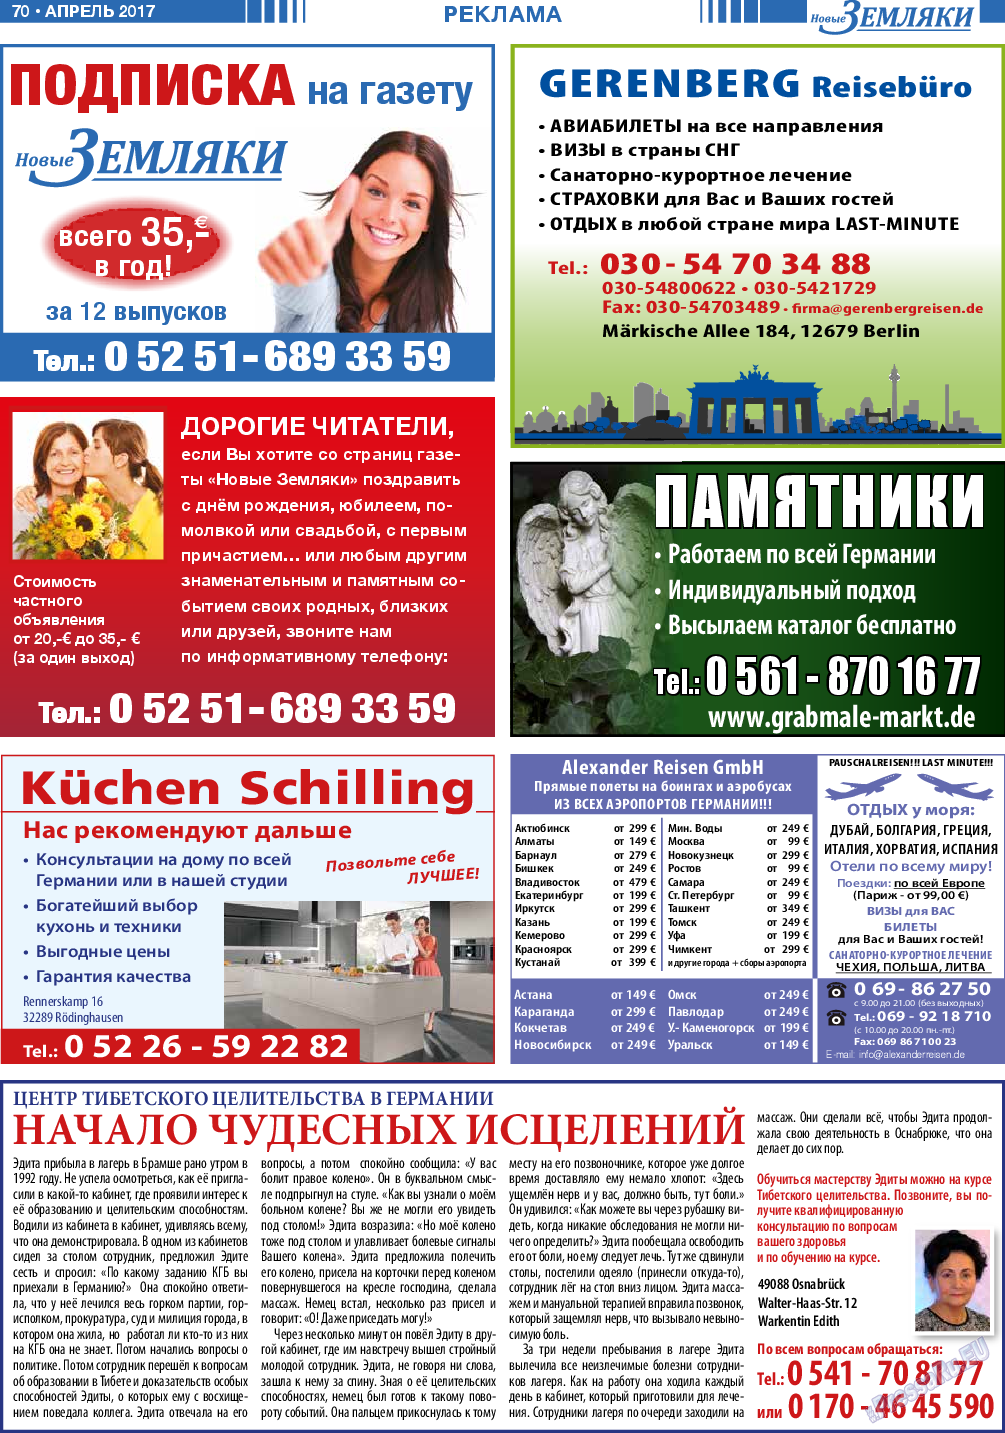 Новые Земляки, газета. 2017 №4 стр.70